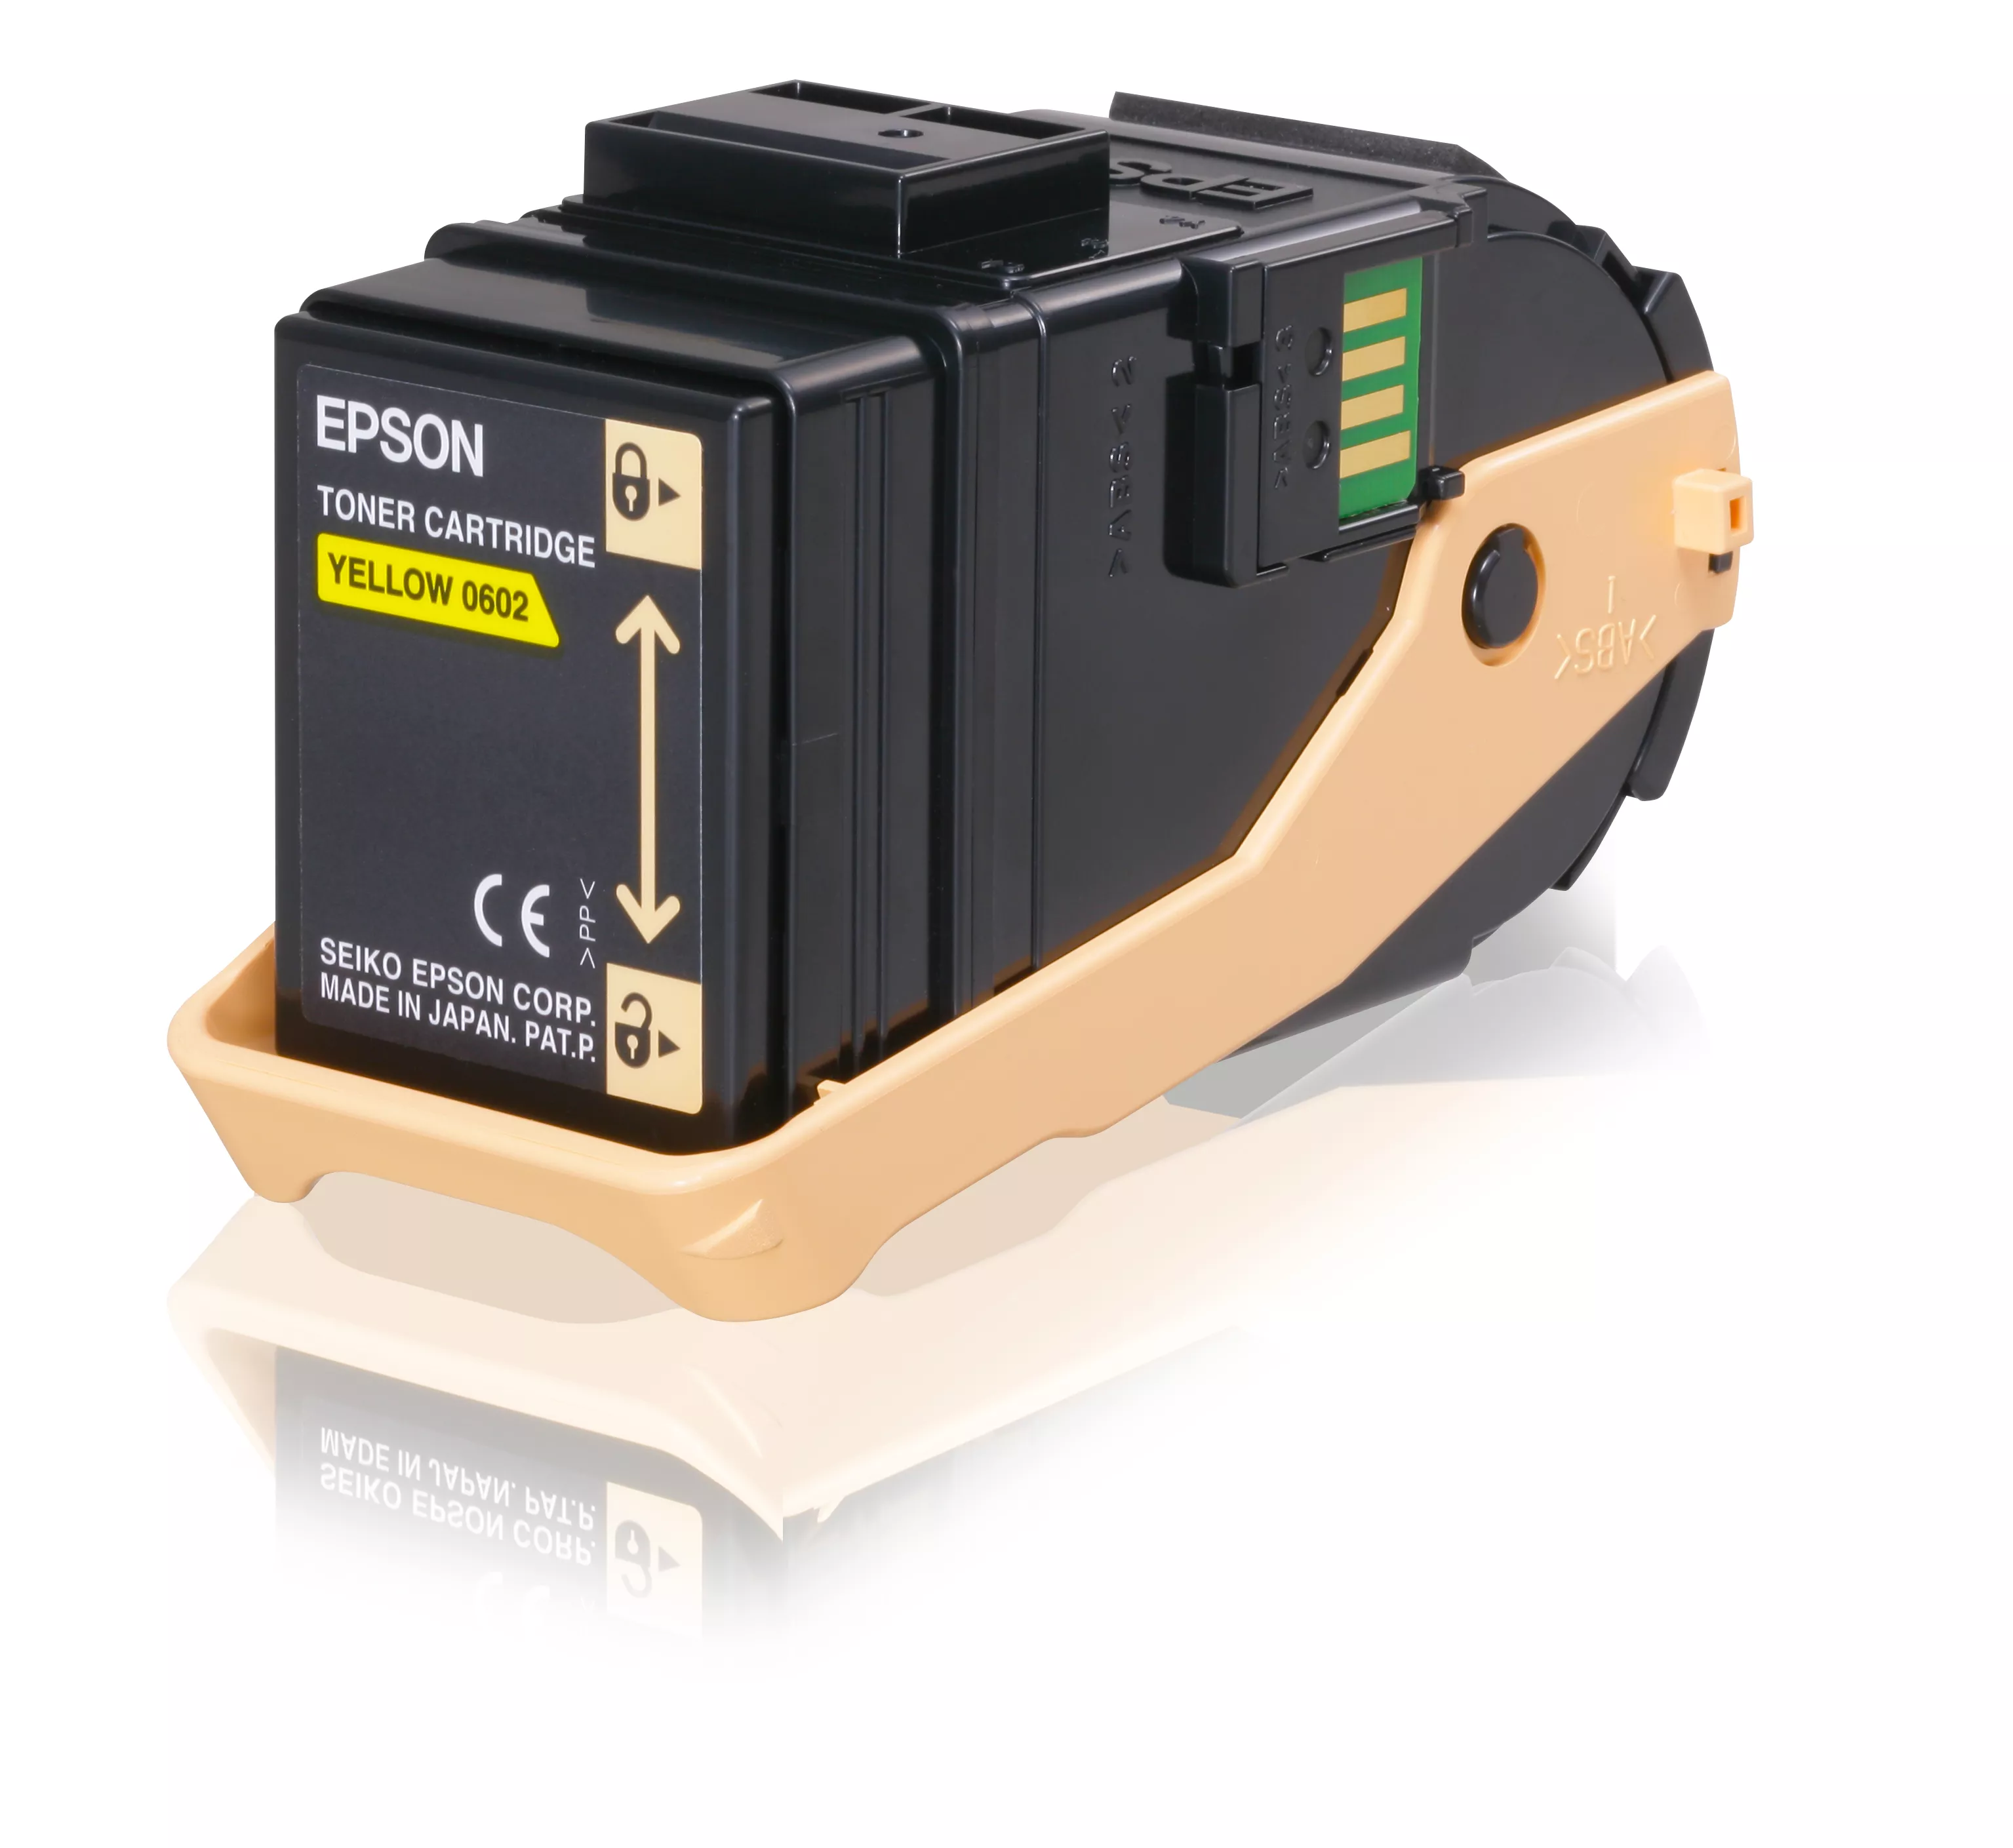 Achat EPSON AL-C9300N cartouche de toner jaune capacité sur hello RSE